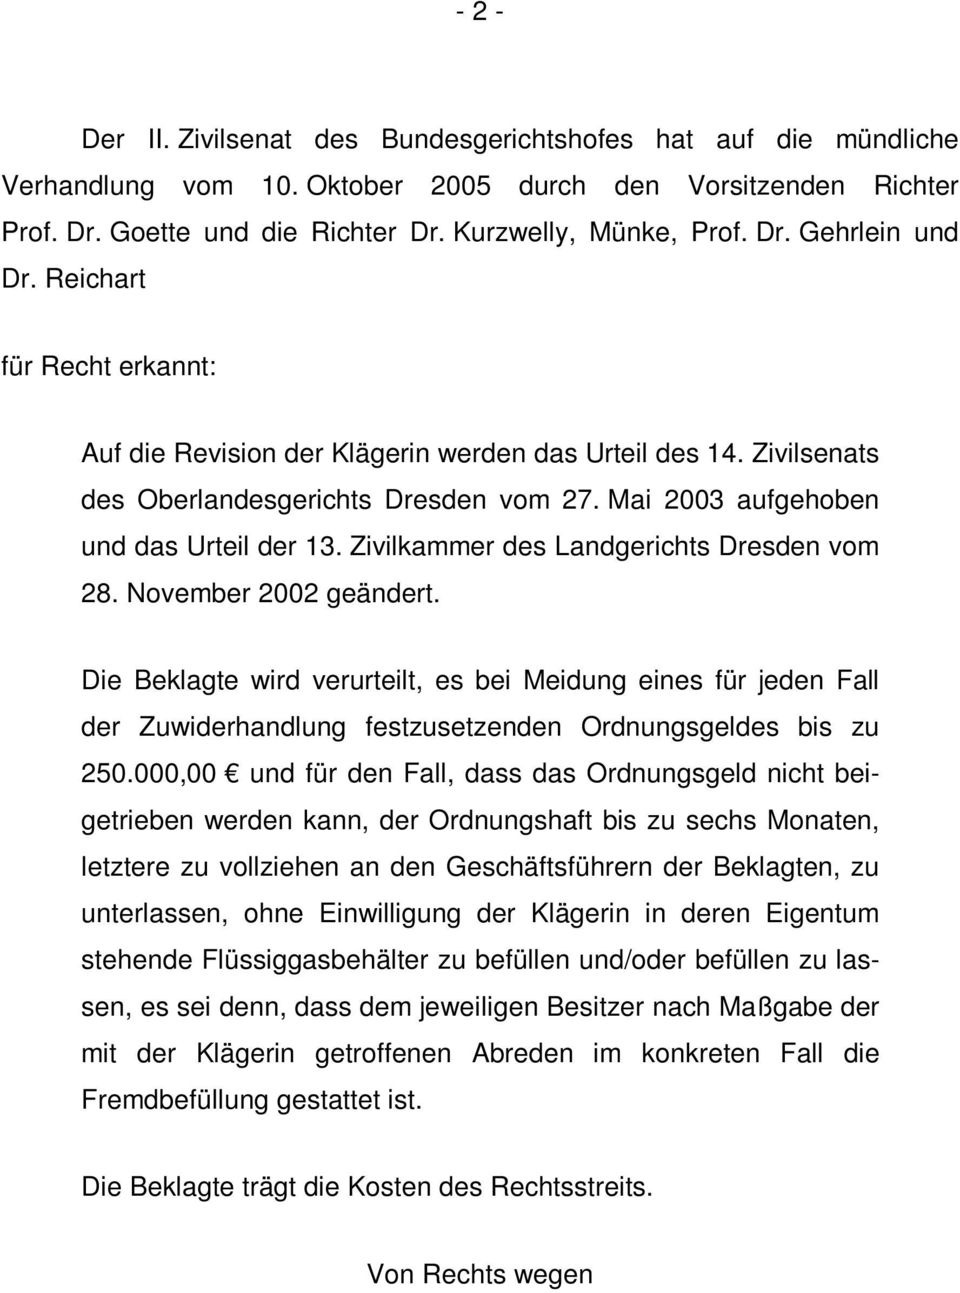 Zivilkammer des Landgerichts Dresden vom 28. November 2002 geändert. Die Beklagte wird verurteilt, es bei Meidung eines für jeden Fall der Zuwiderhandlung festzusetzenden Ordnungsgeldes bis zu 250.